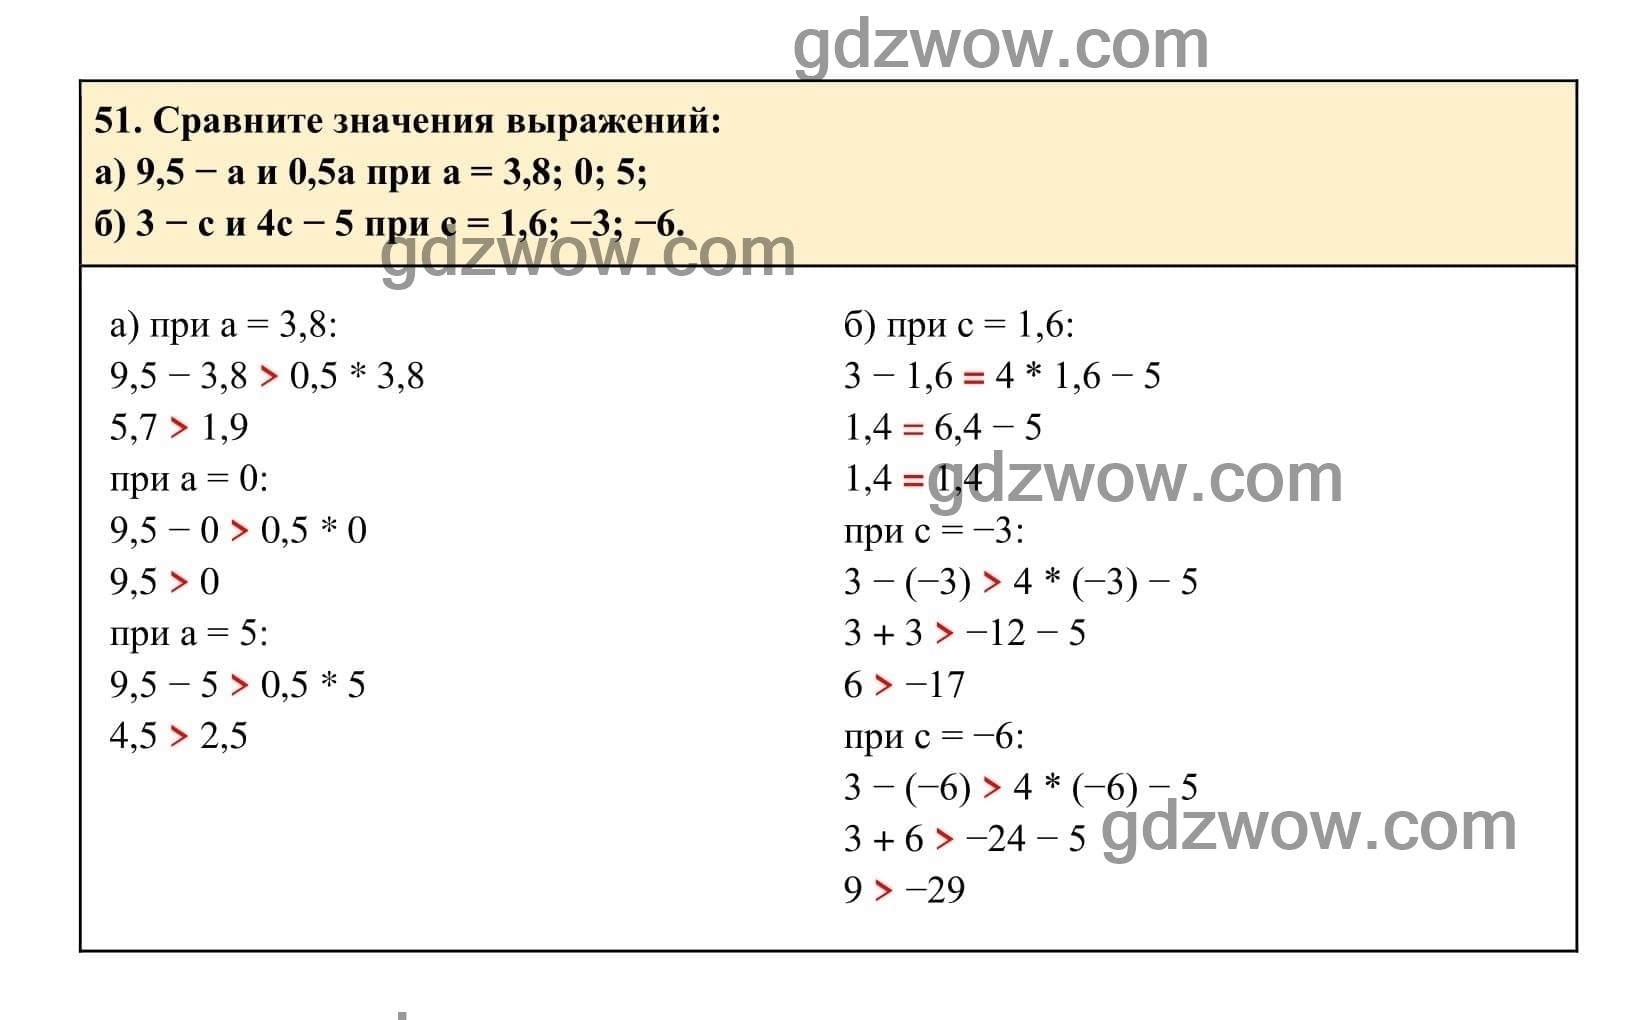 Упражнение 51 - ГДЗ по Алгебре 7 класс Учебник Макарычев (решебник) - GDZwow